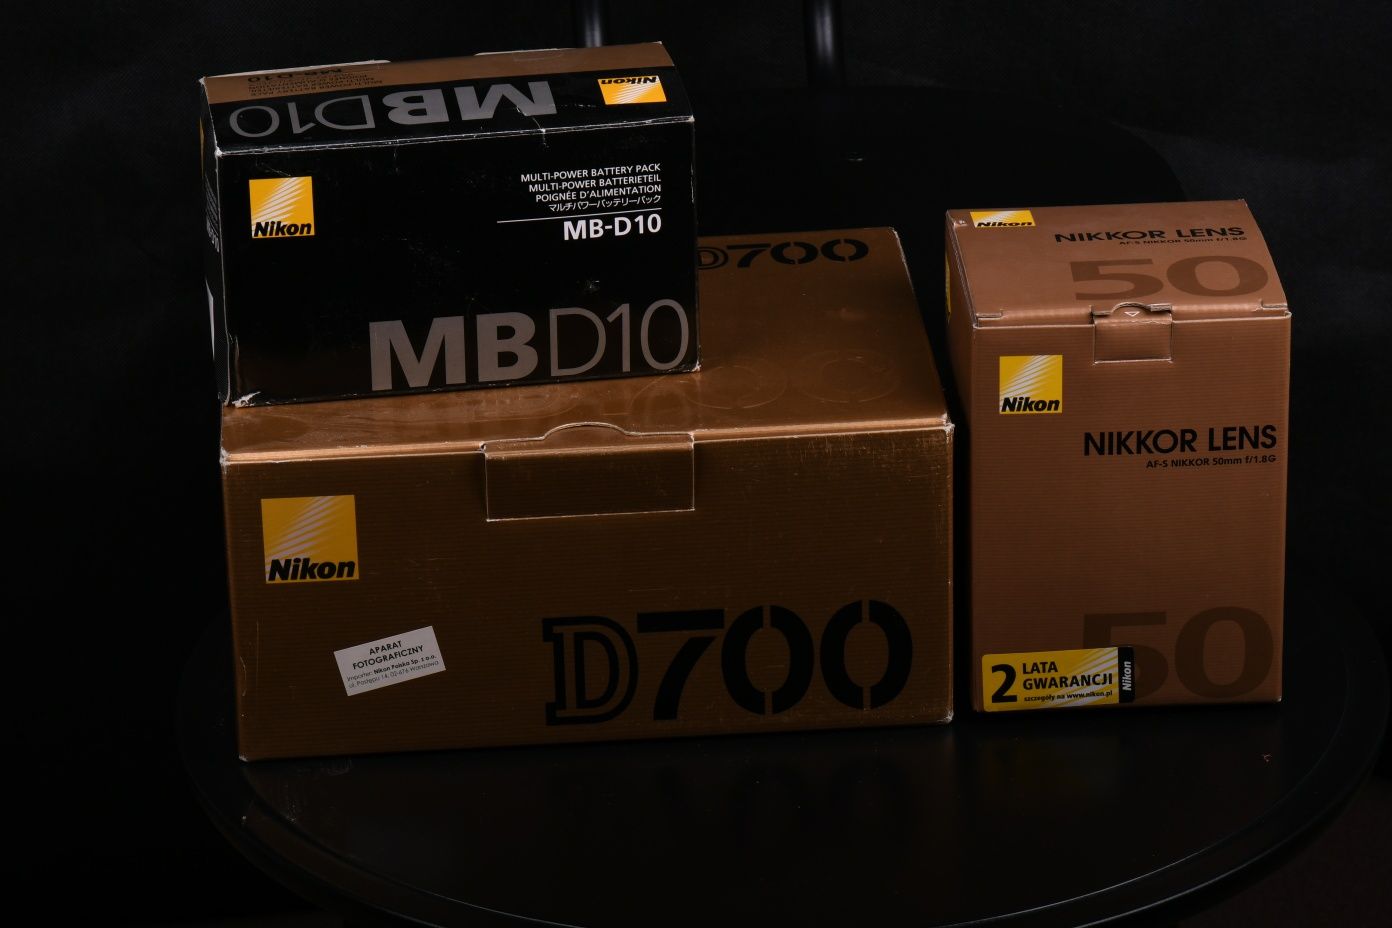 Nikon 700 lustrzanka nowy obiektyw